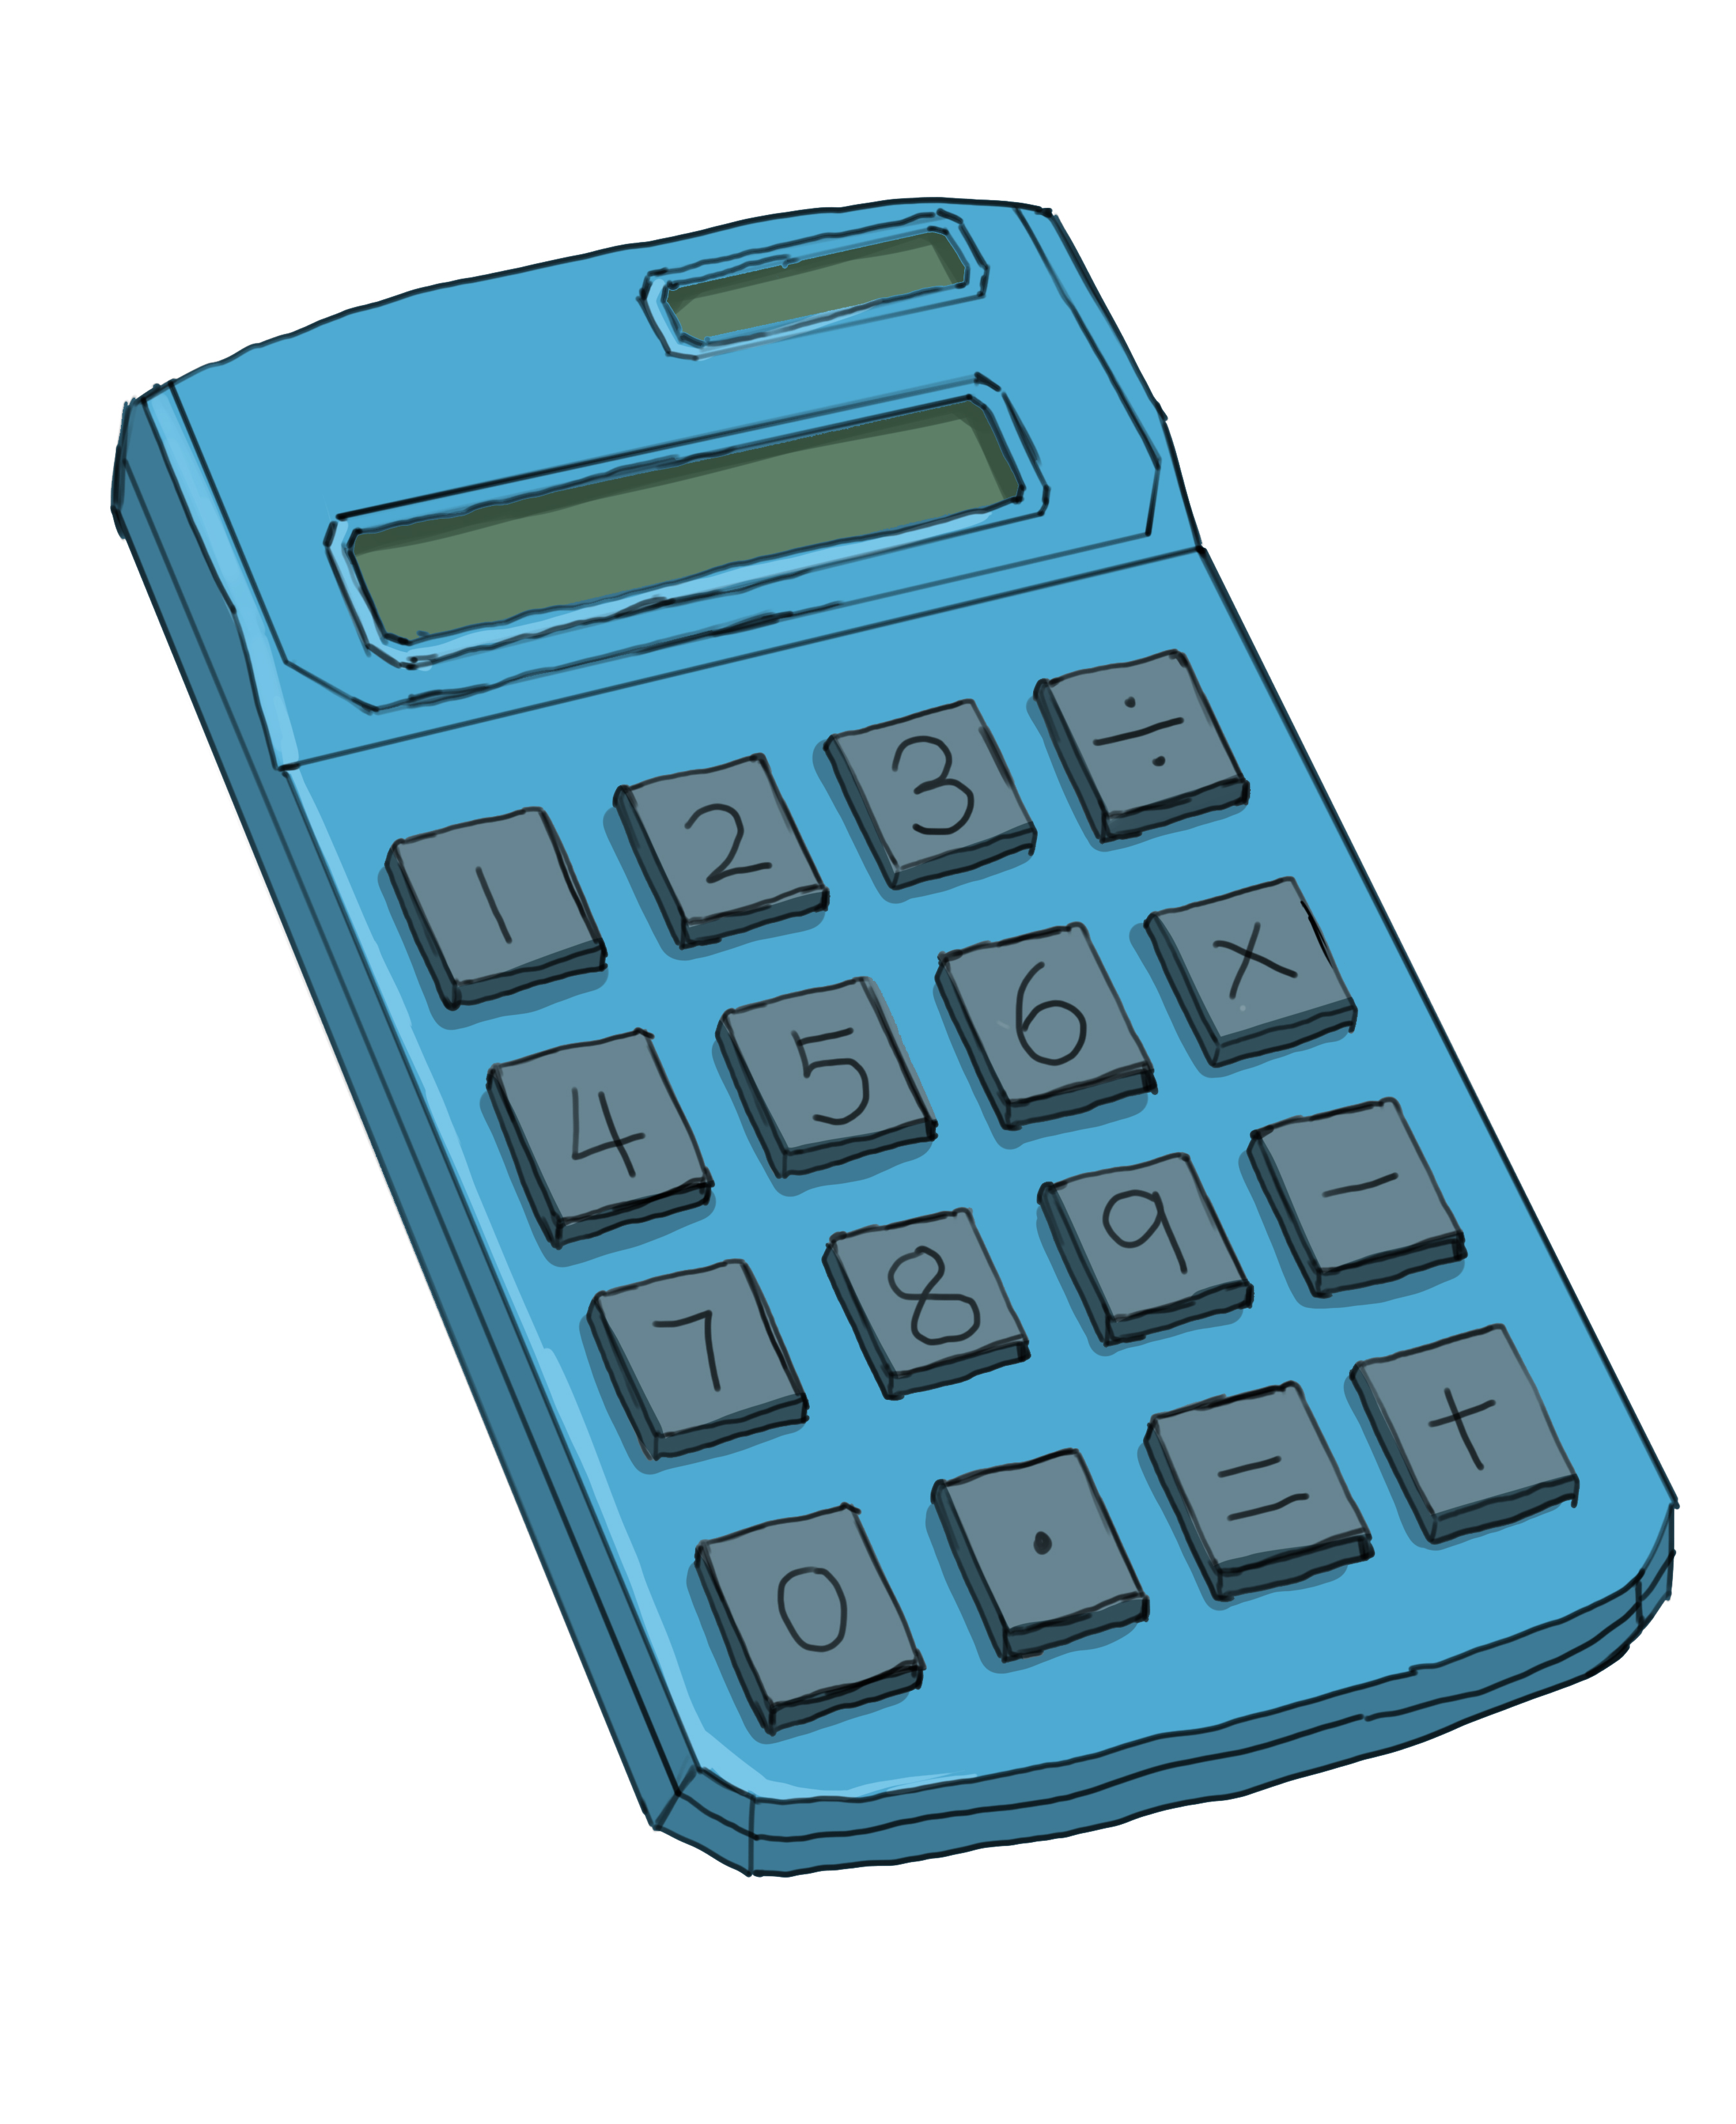 A basic calculator